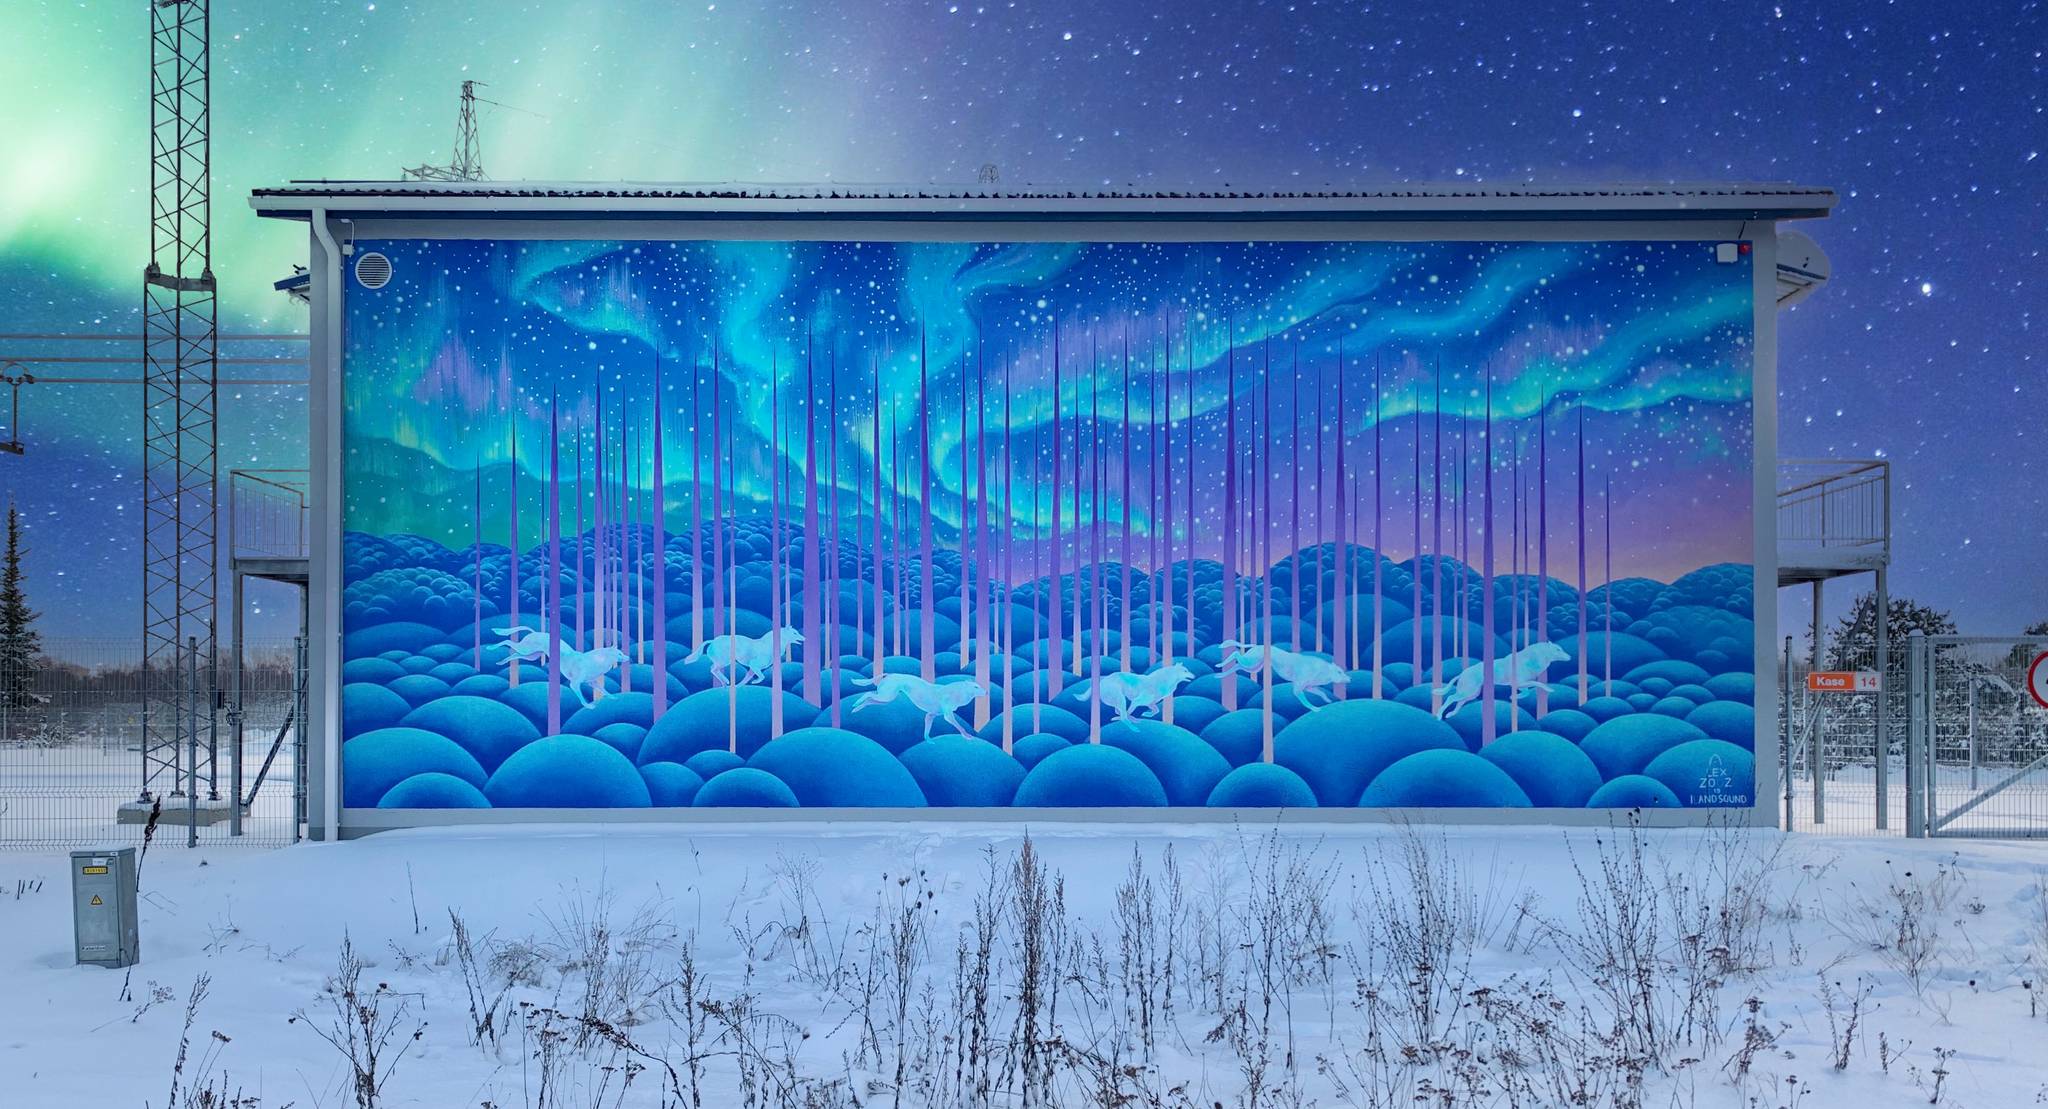 Lex Zooz&mdash;Mural “Polar wolves”